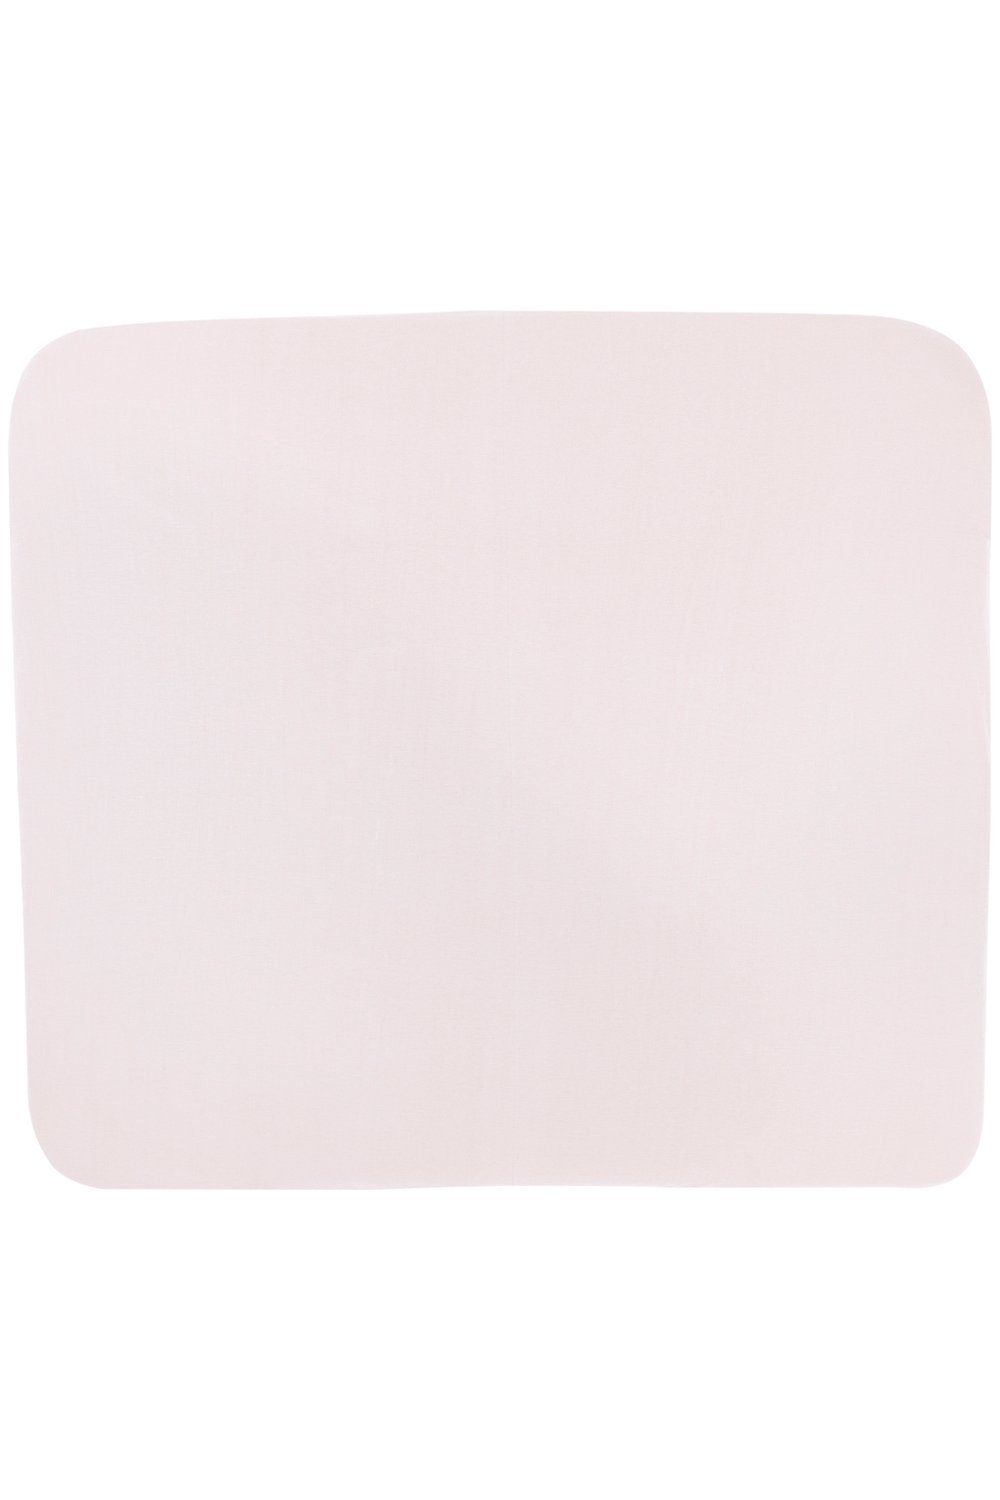 Meyco Baby Wickelauflagenbezug Uni 85x75cm Pink (1-tlg), Light